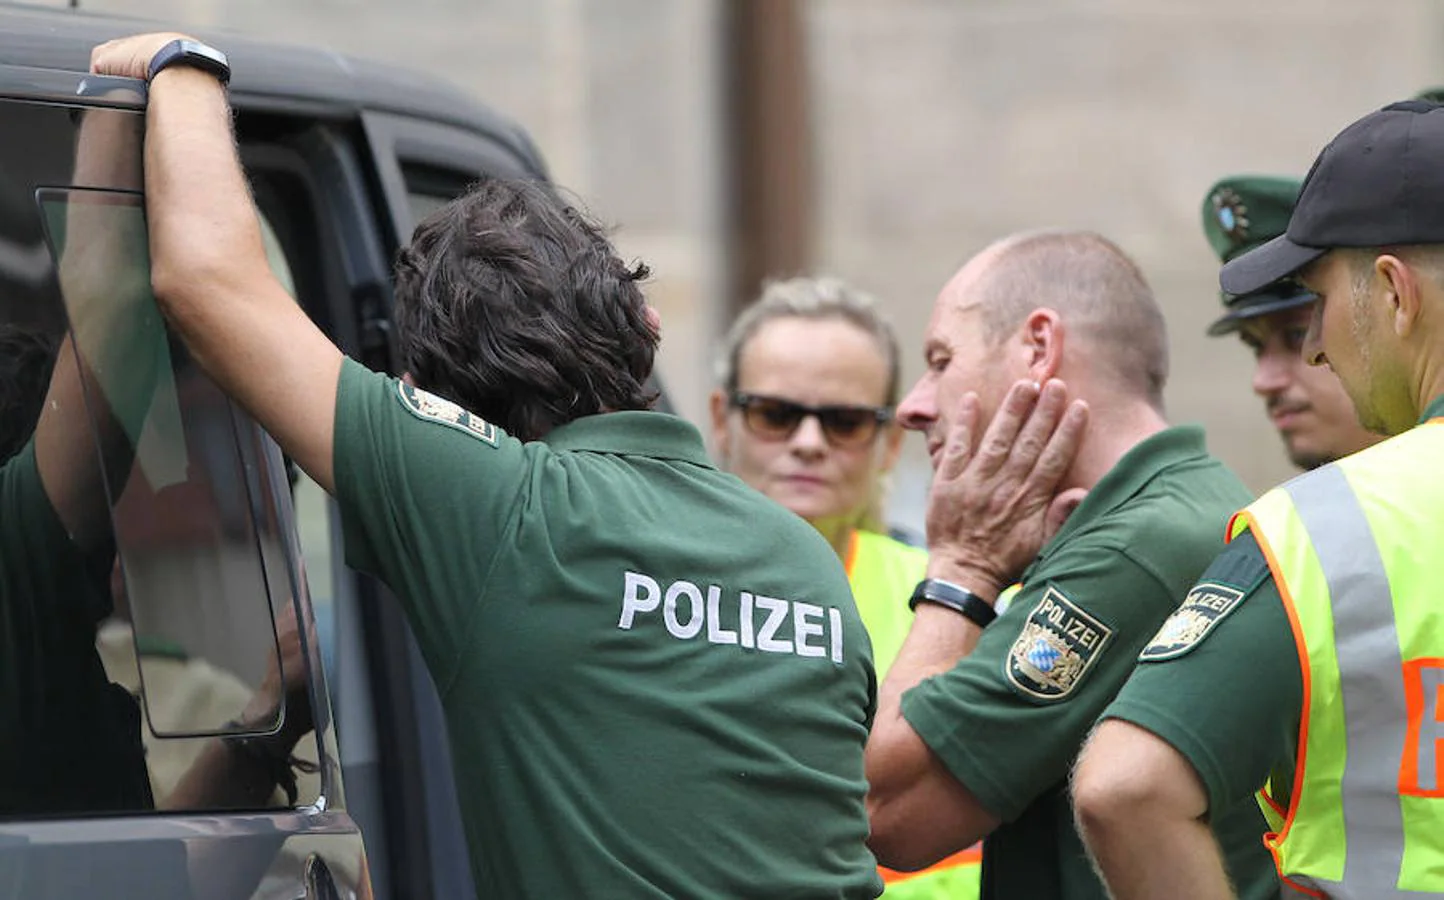 El atentado ha causado conmoción en Ansbach, una ciudad de apenas 40.000 habitantes